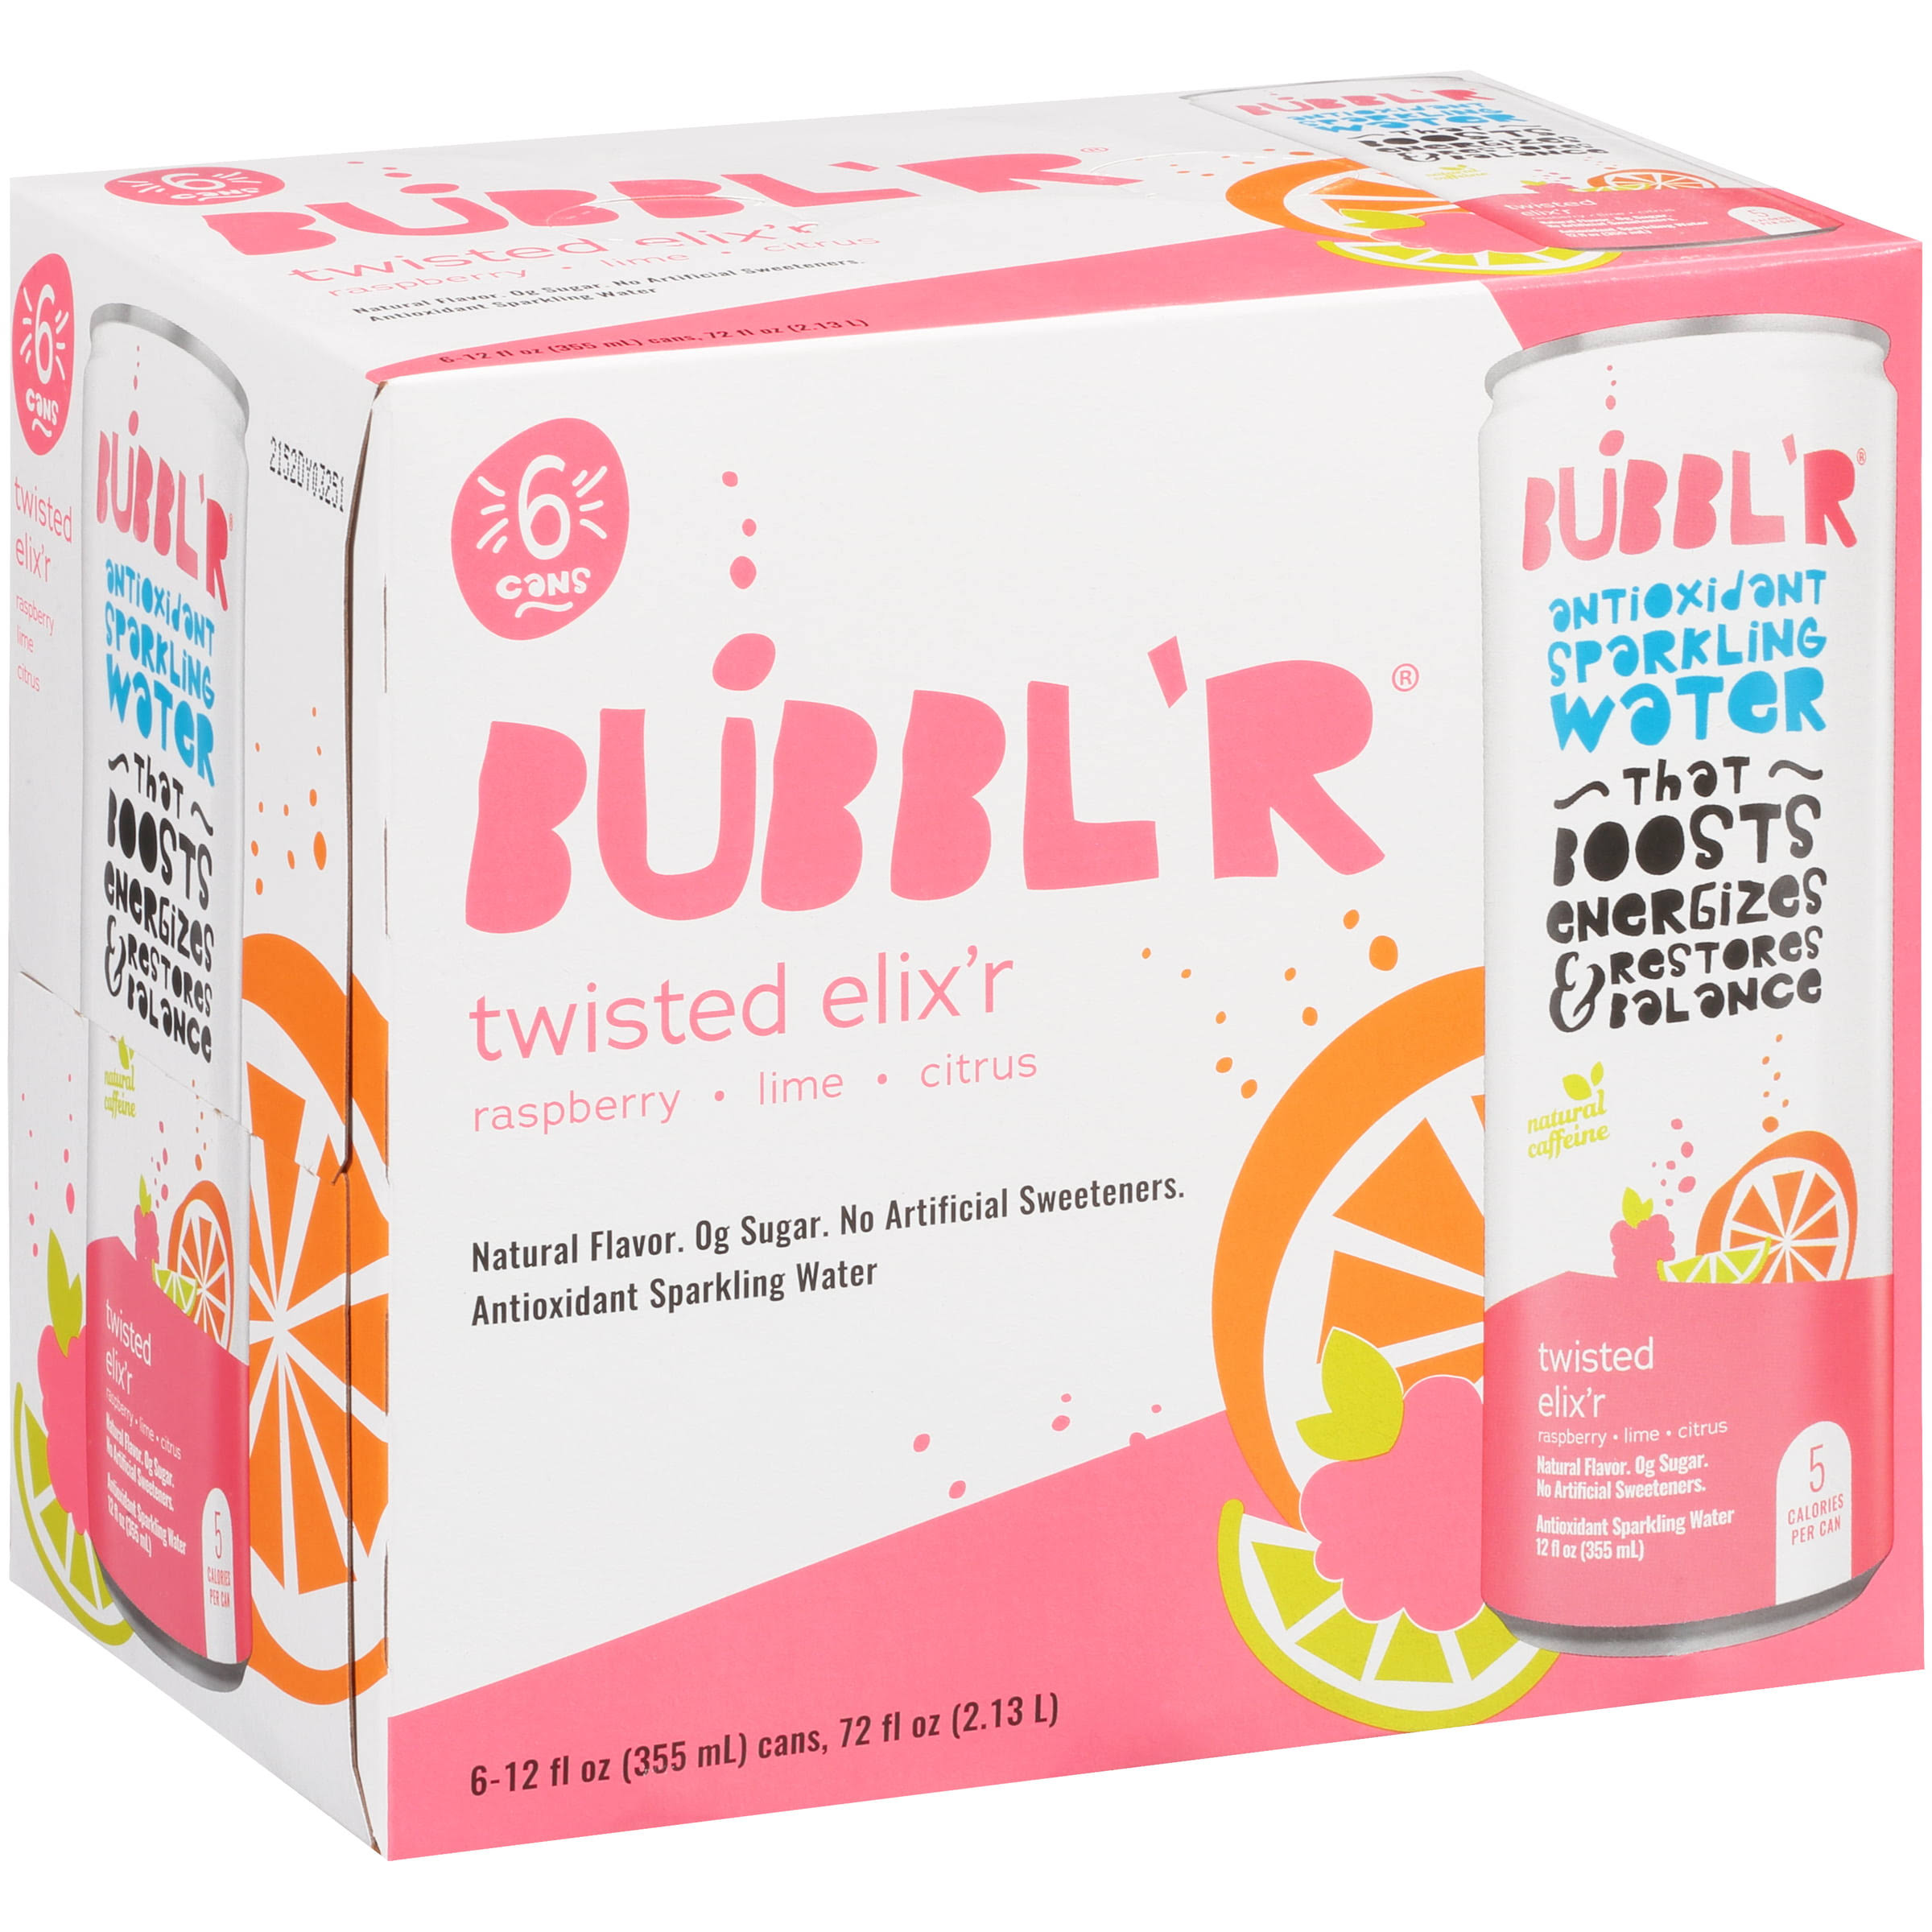 BUBBL'R Twisted elix'r Antioxidant Sparkling Water - 12 fl oz